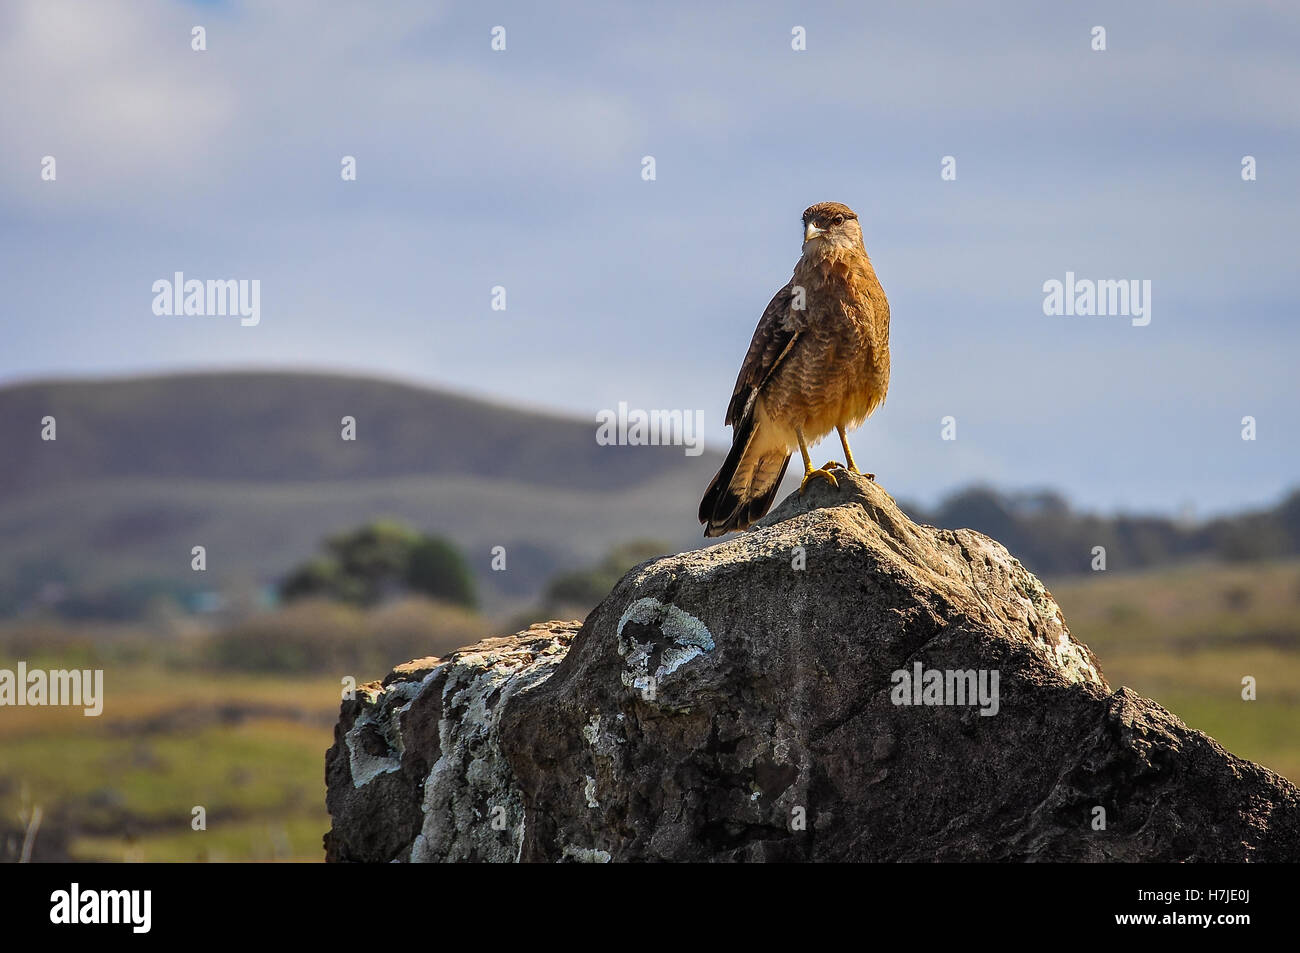 Falcon in attesa sulla costa ruvida dell'isola di pasqua, Cile Foto Stock